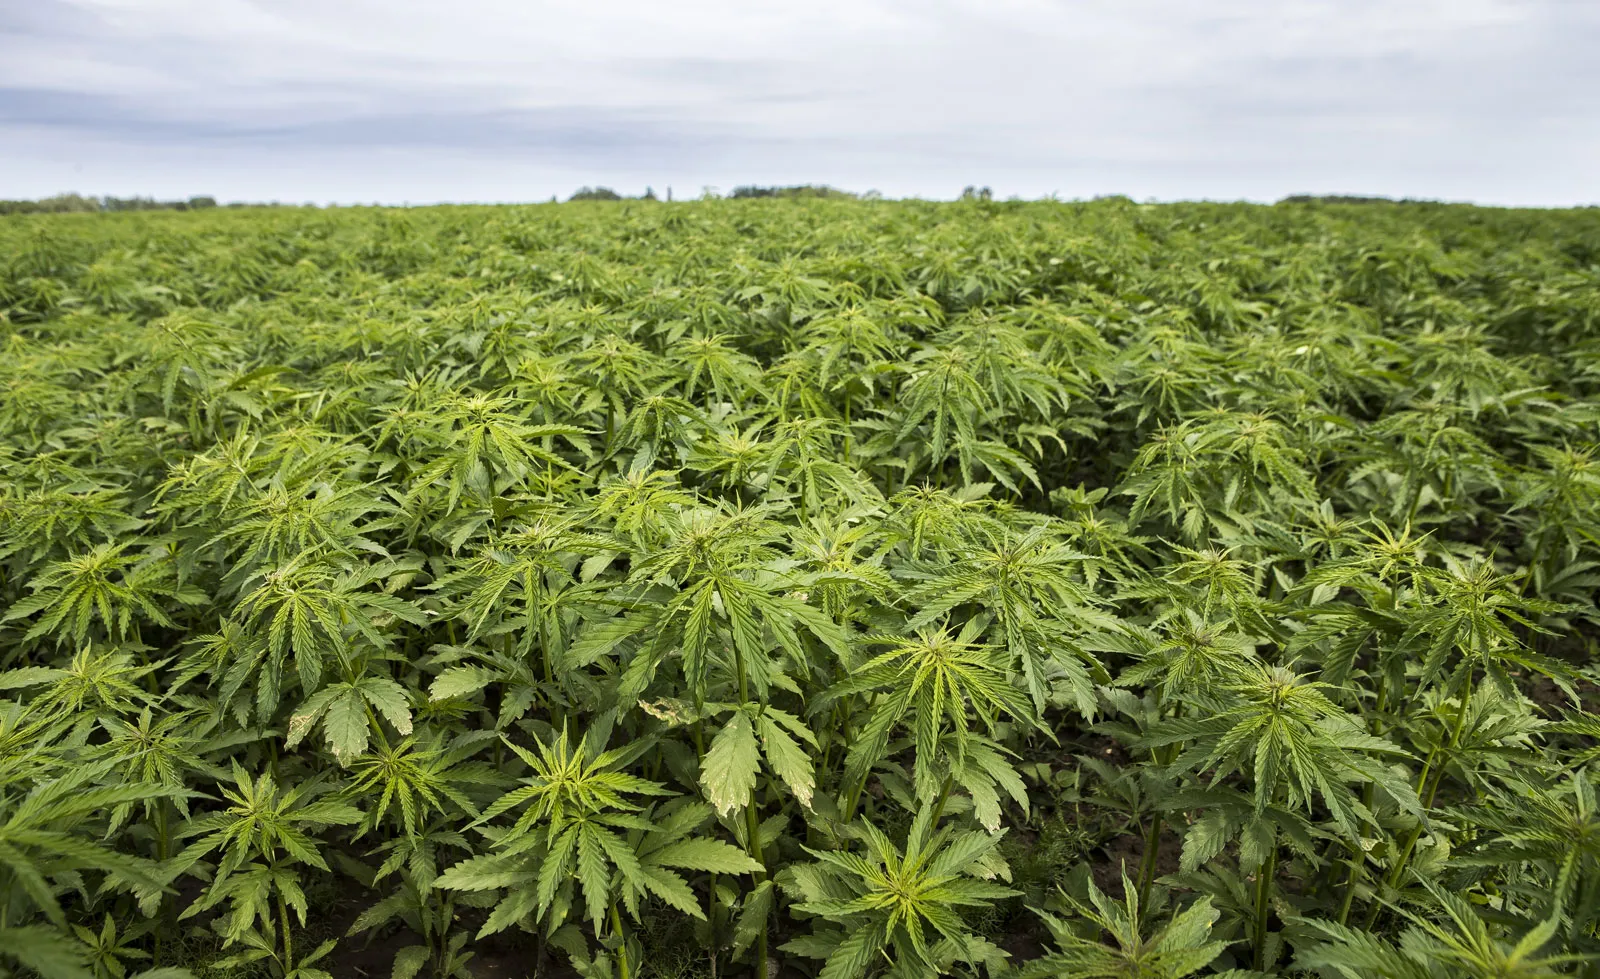 उत्तराखंड 'औद्योगिक भांग'('Industrial Cannabis') उगाने वाला पहला राज्य बना।